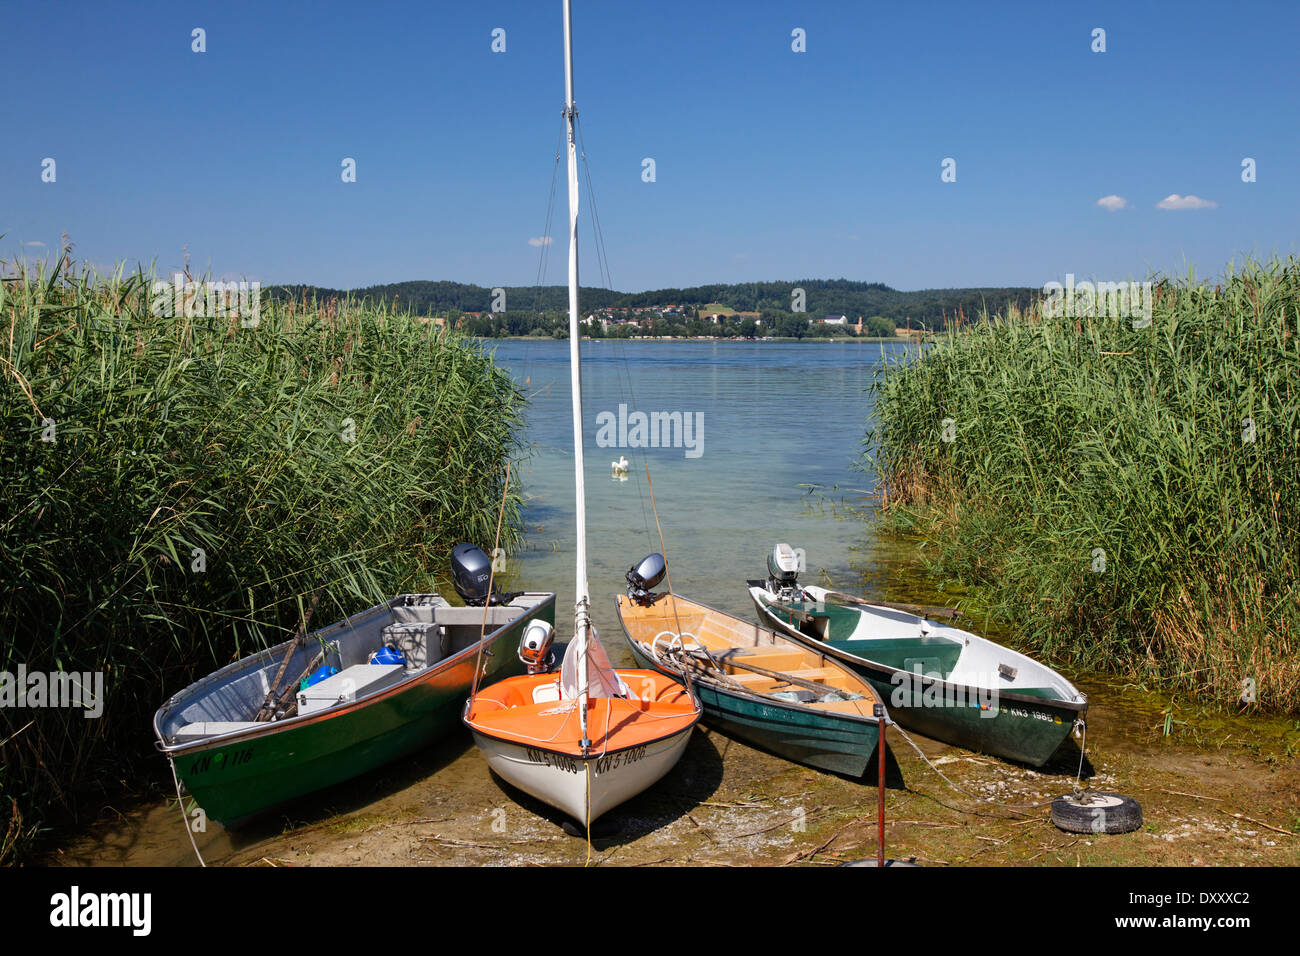 In Germania, il lago di Costanza, Reichenau Islanda, shore, barche, Deutschland, Bodensee, isola di Reichenau, Ufer, Boote Foto Stock